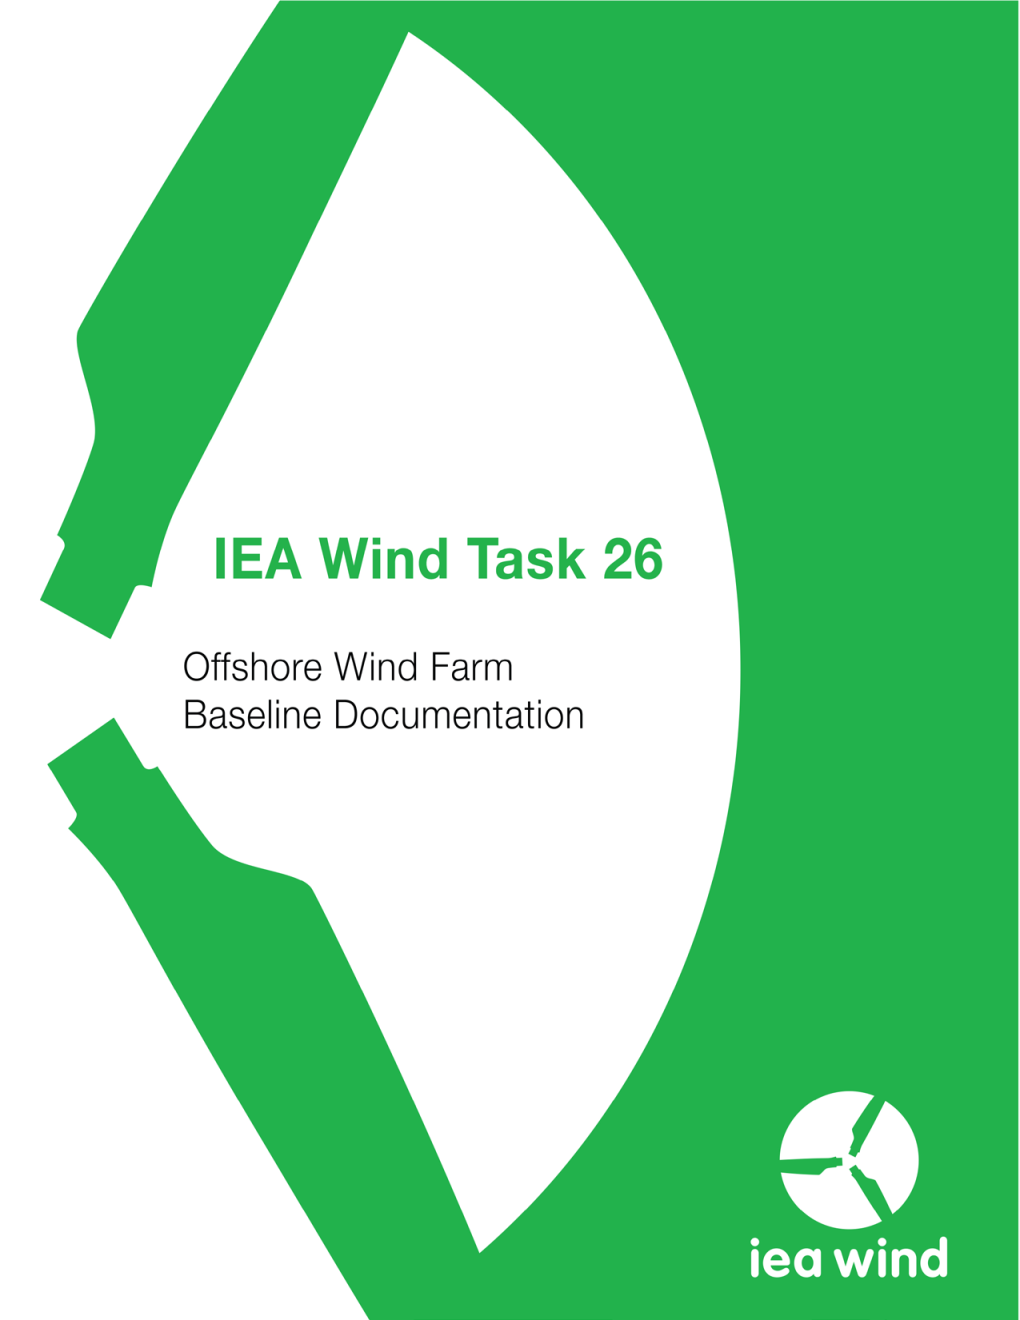 IEA Wind Task 26: Offshore Wind Farm Baseline Documentation